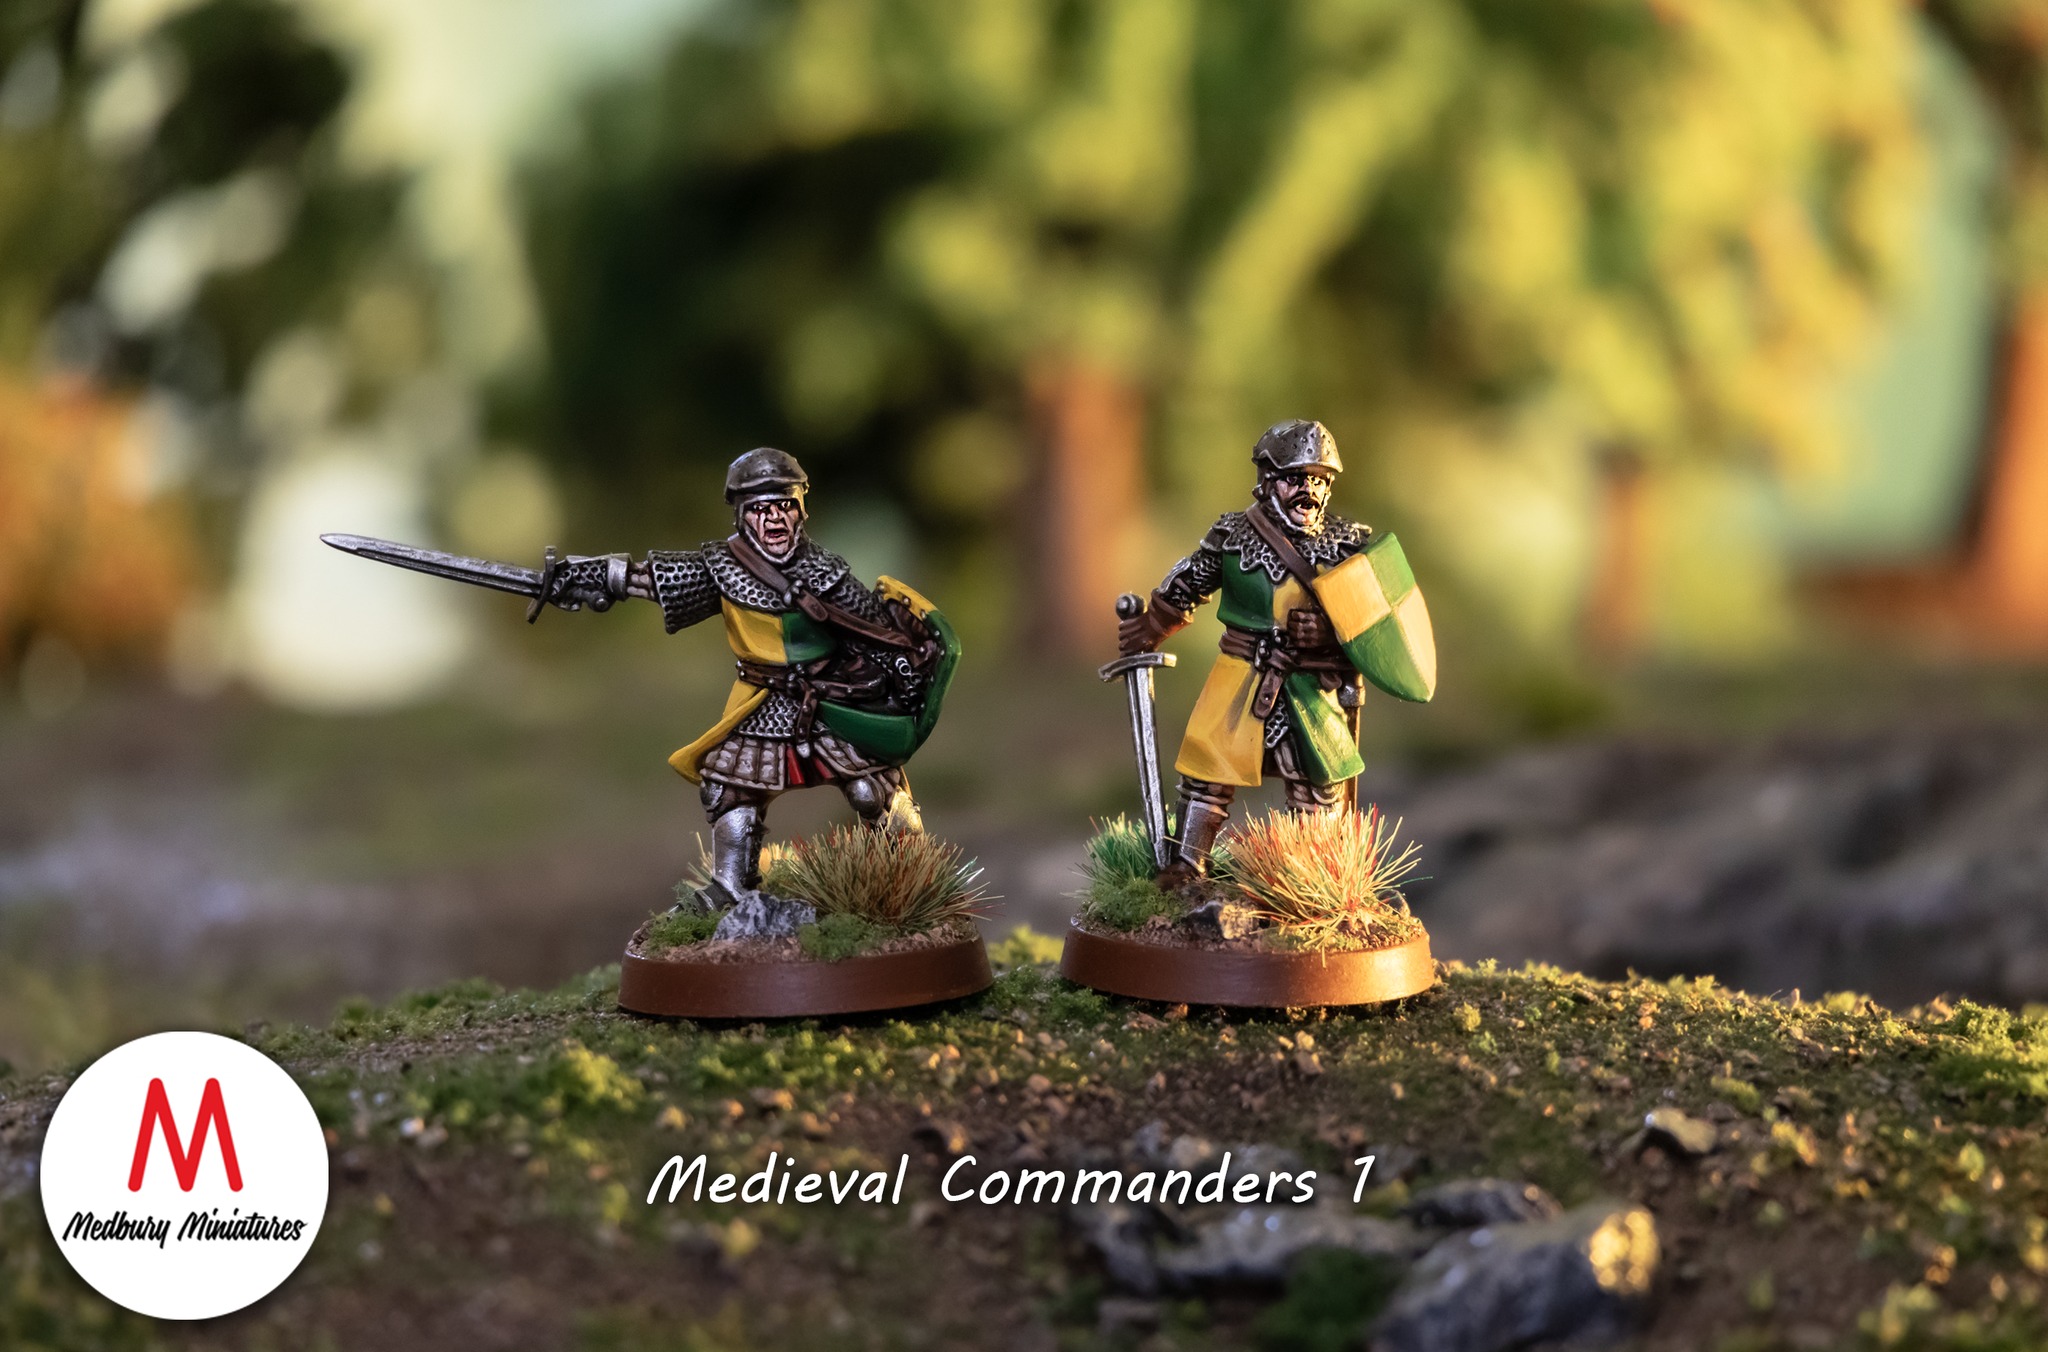 Medieval Commanders - Medbury Miniatures